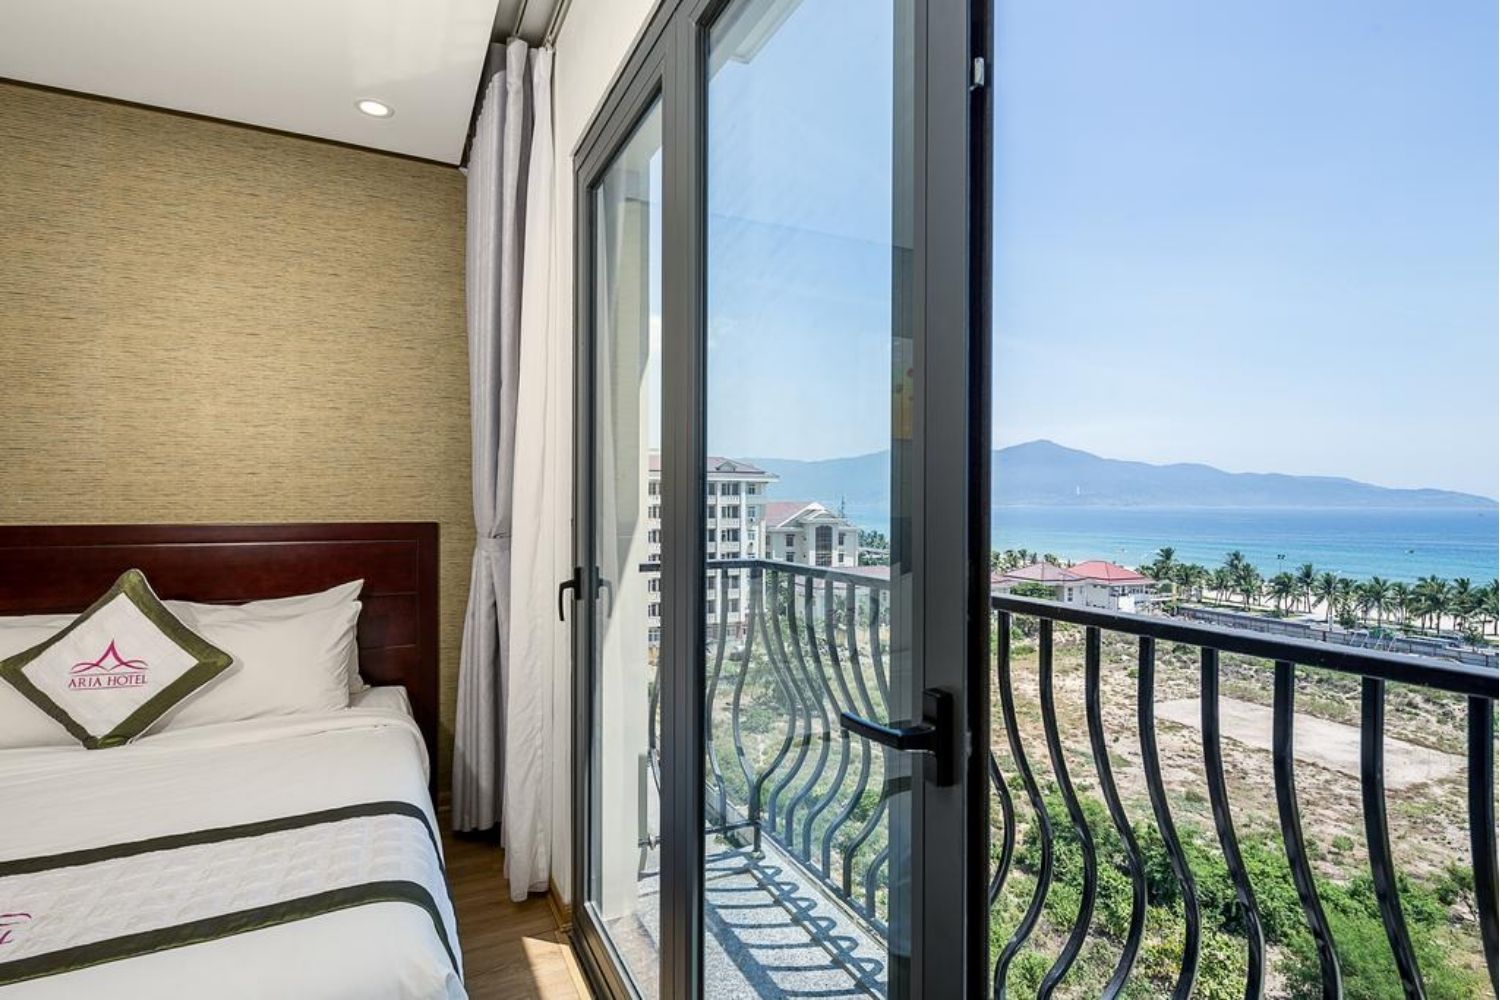 Đến Aria Hotel tận hưởng đẳng cấp khách sạn 4 sao bậc nhất tại Đà Nẵng 8